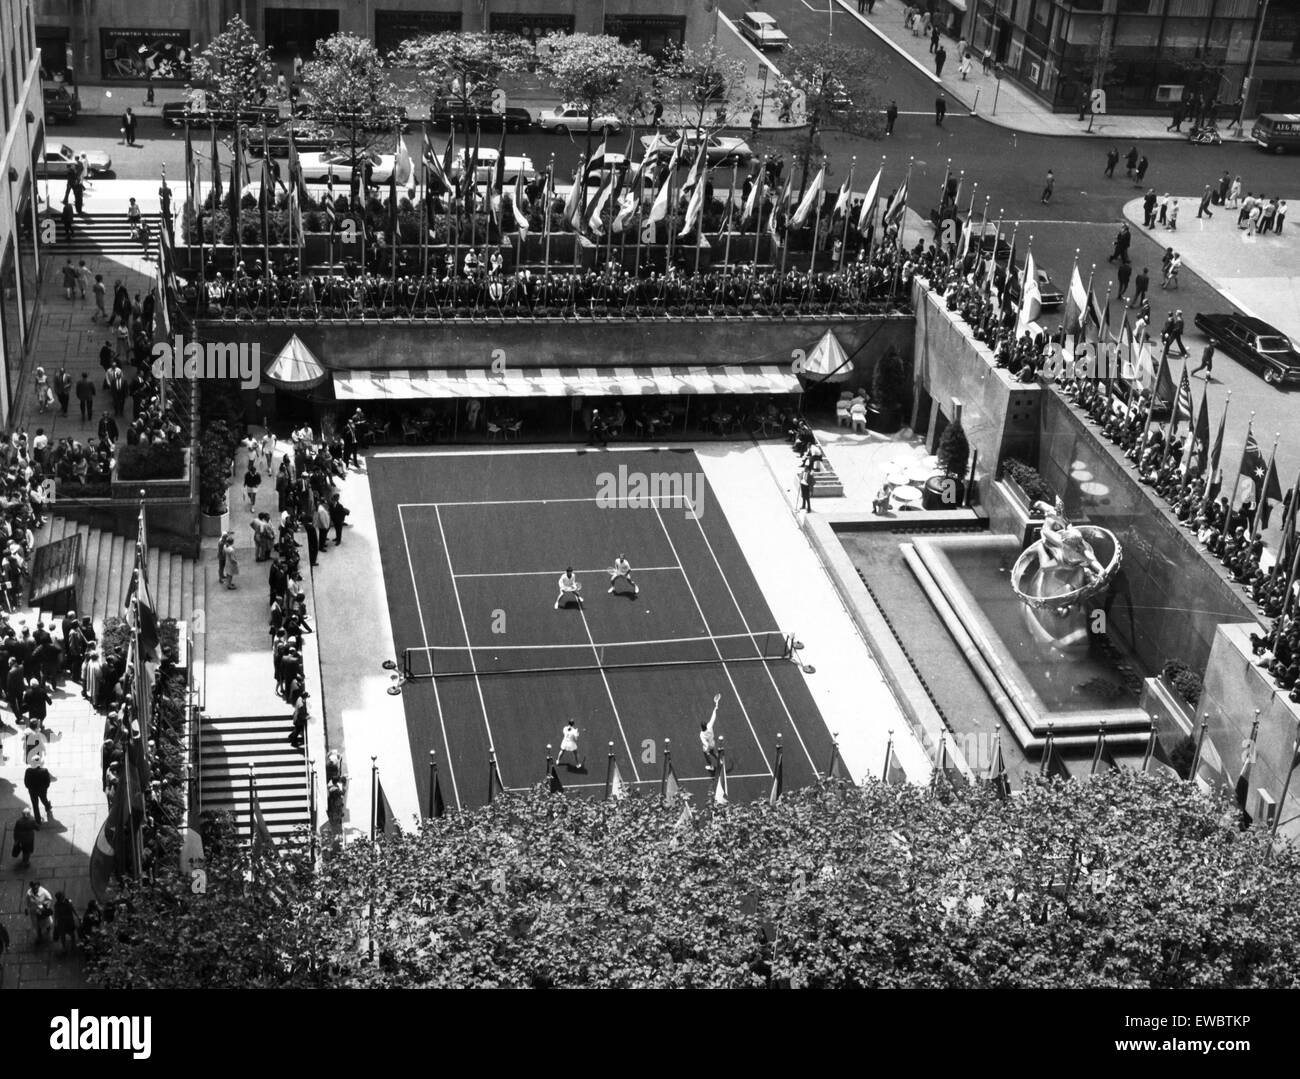 tennis game in  rockefeller center,new york,1968 Stock Photo